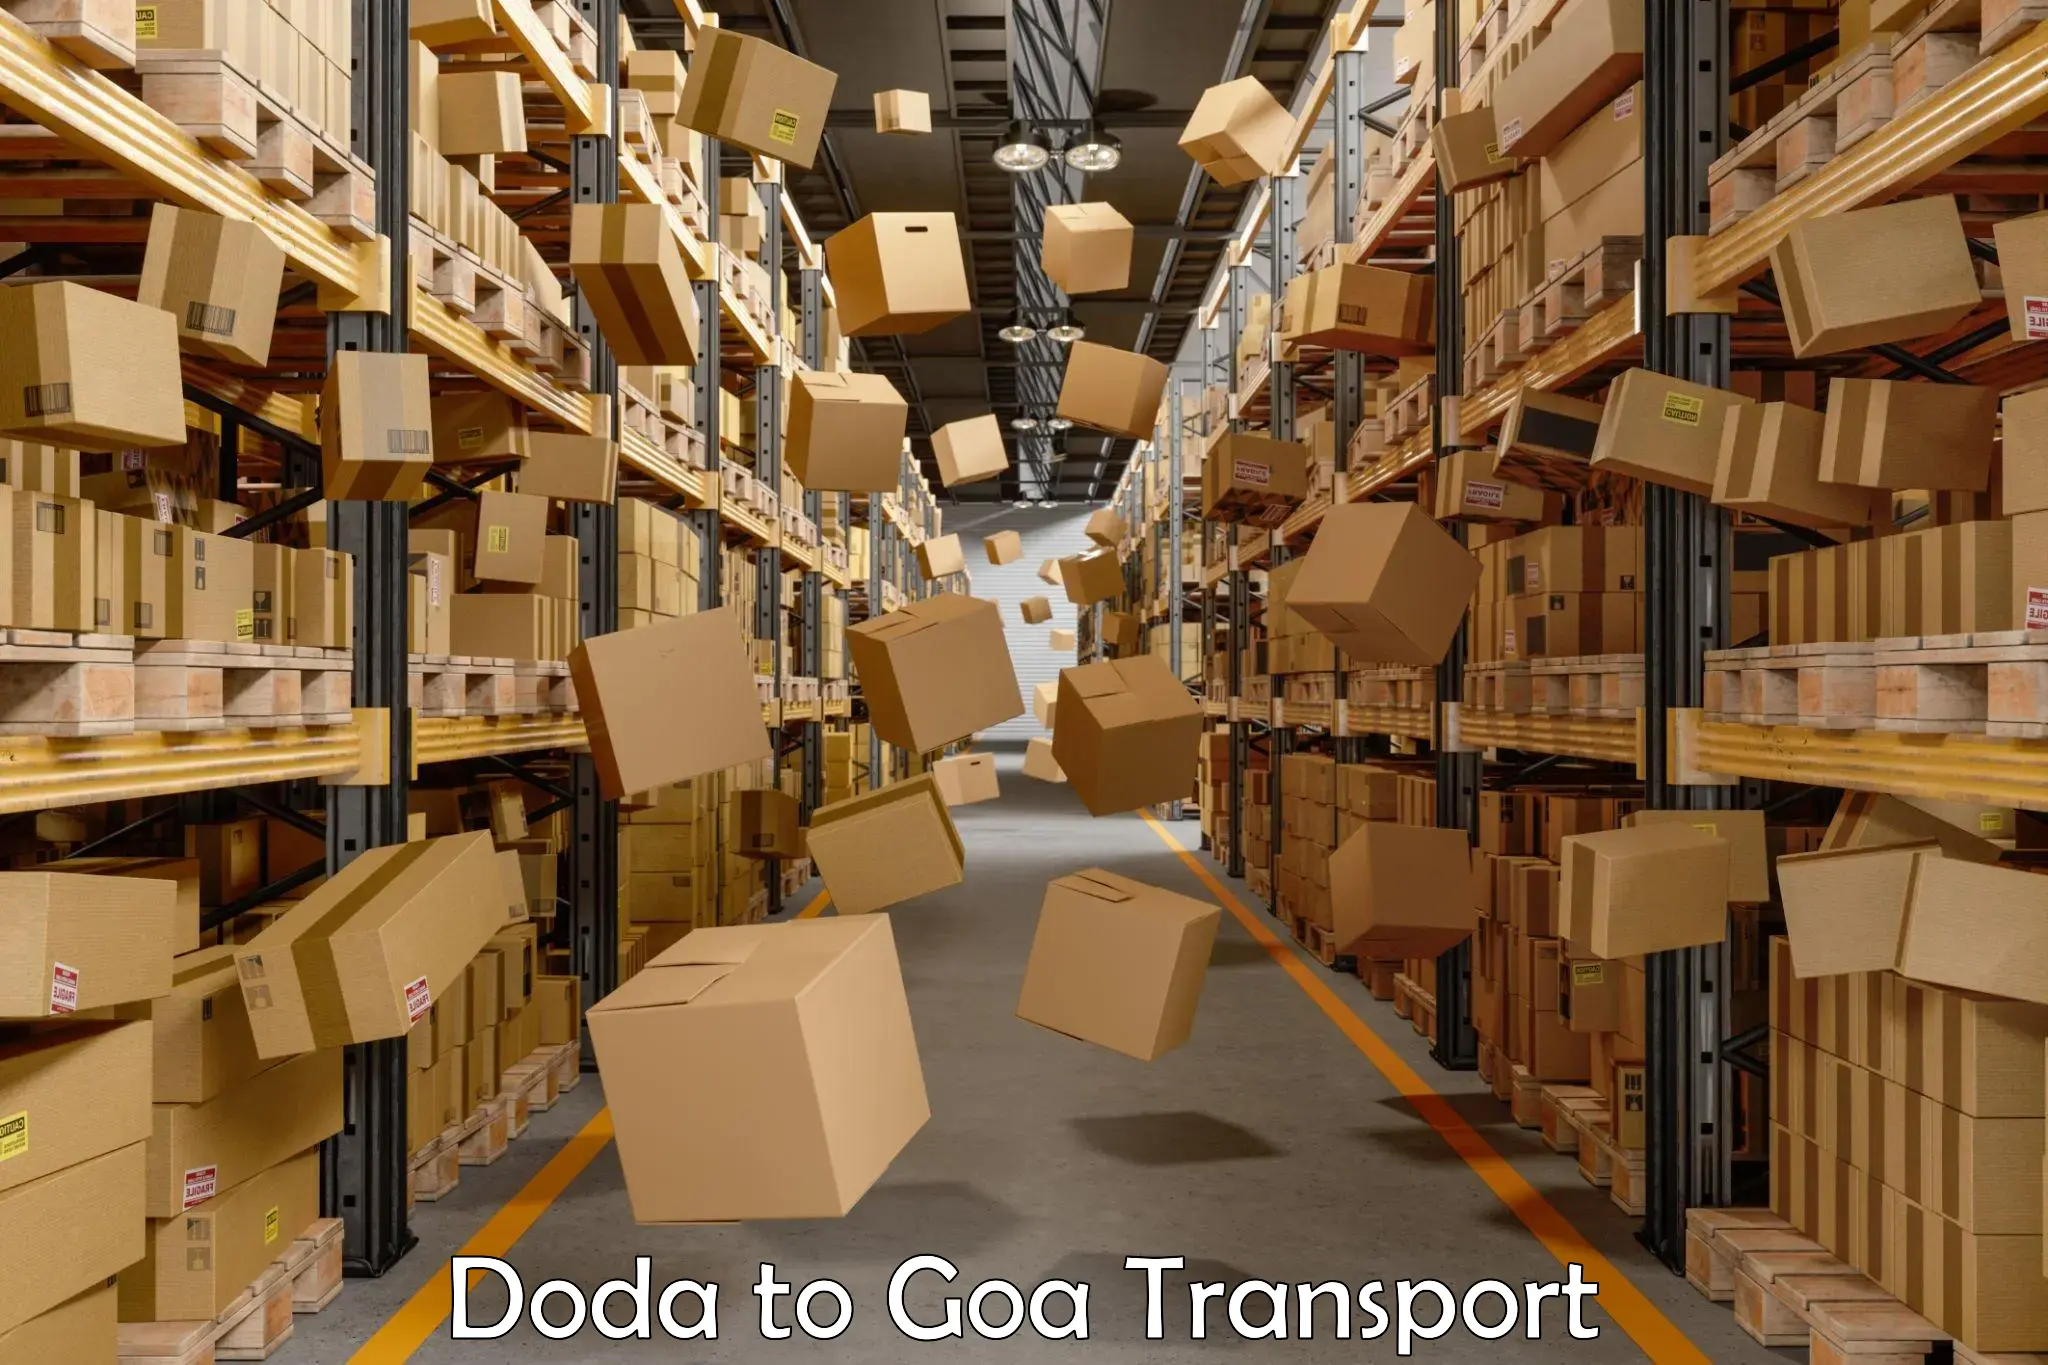 Commercial transport service Doda to Canacona